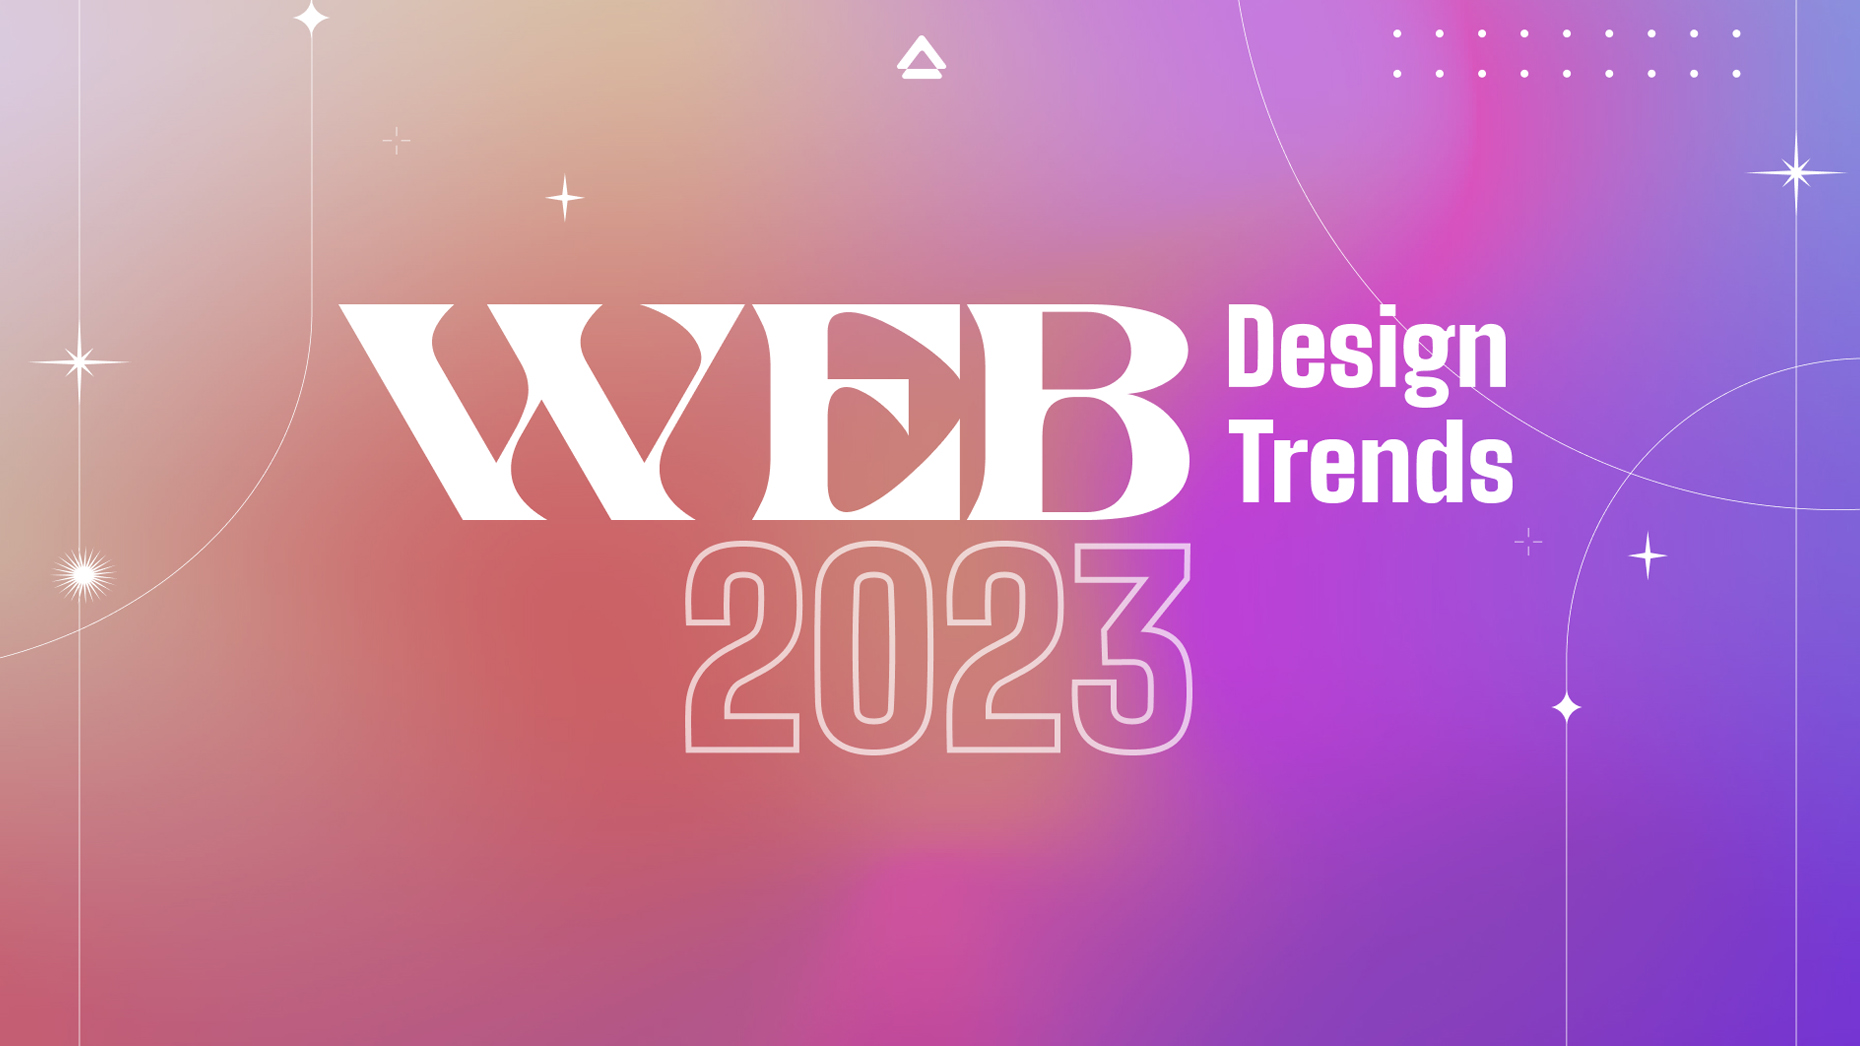 birmingham web design trends 2023